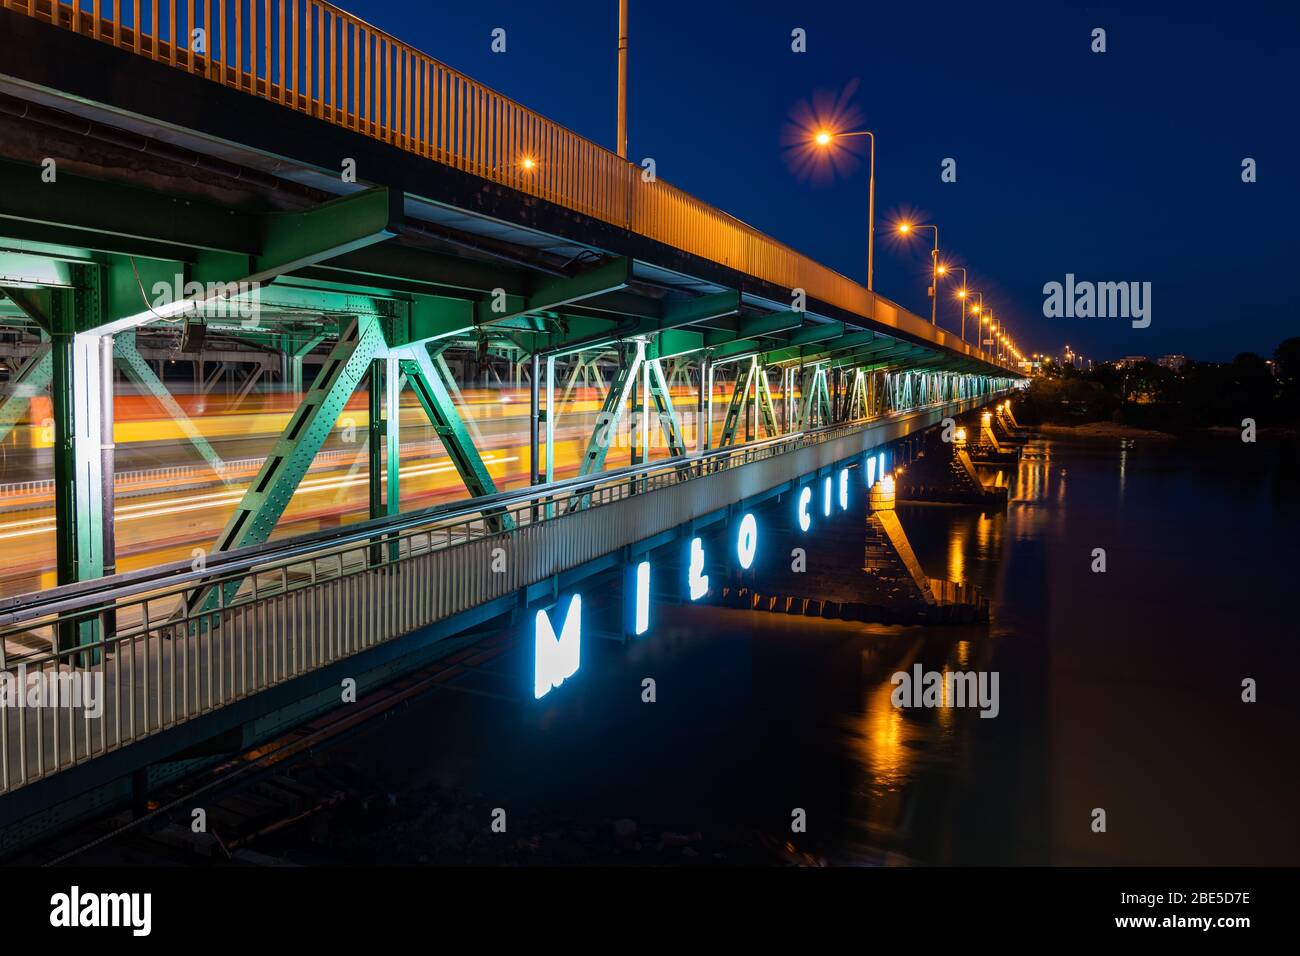 Gdanski Brücke über die Weichsel bei Nacht in Warschau in Polen, Neonschild in Polnisch - "Nice to See you", Straßenbahn-Lichtwege auf der unteren Ebene des d Stockfoto